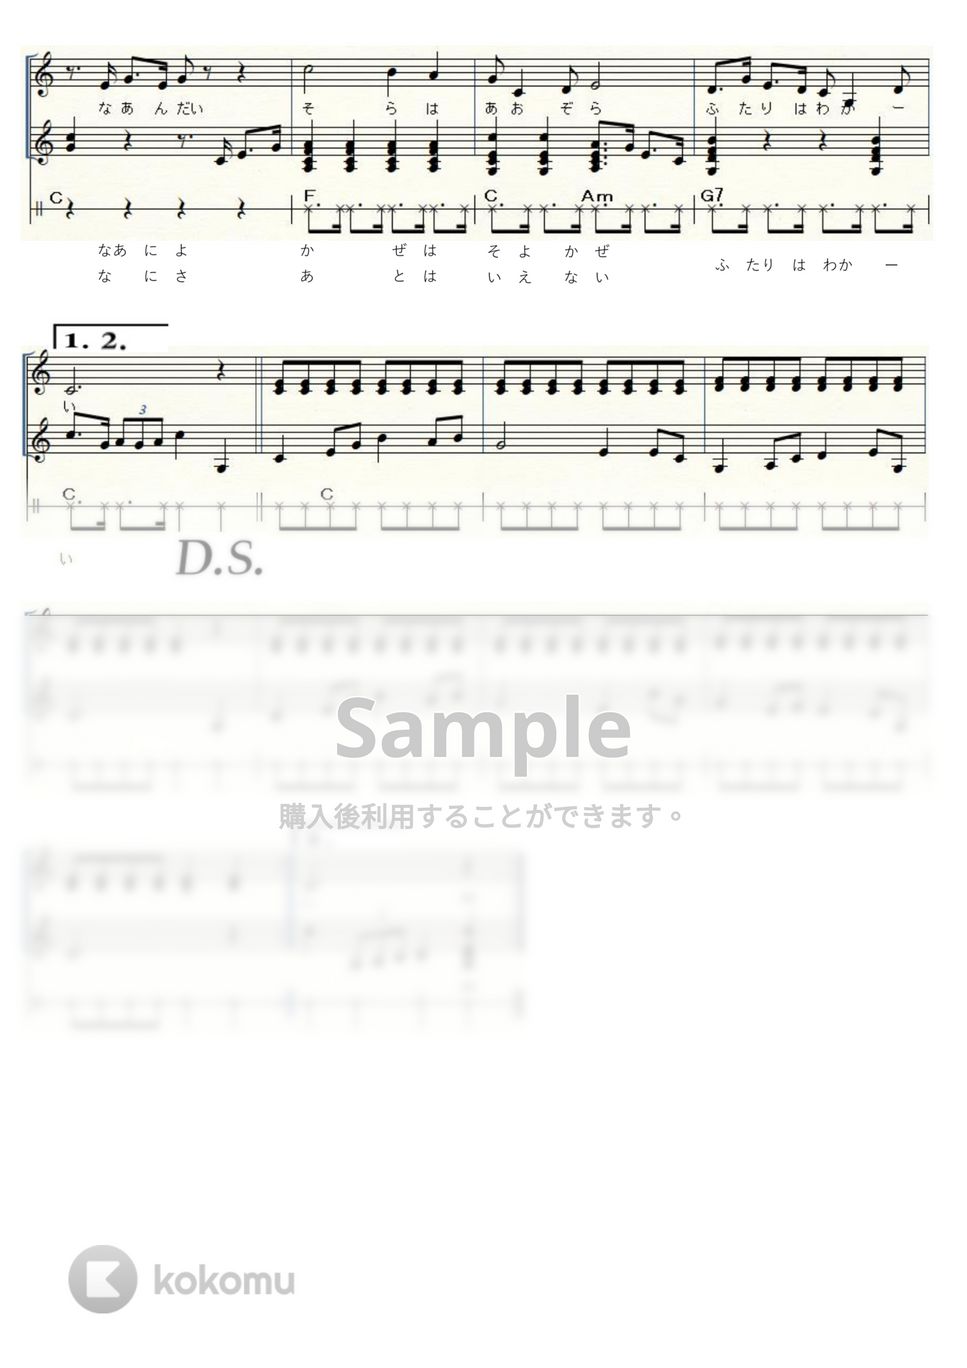 ディックミネ・星玲子 - 二人は若い (ｳｸﾚﾚ三重奏/Low-G/中級) by ukulelepapa